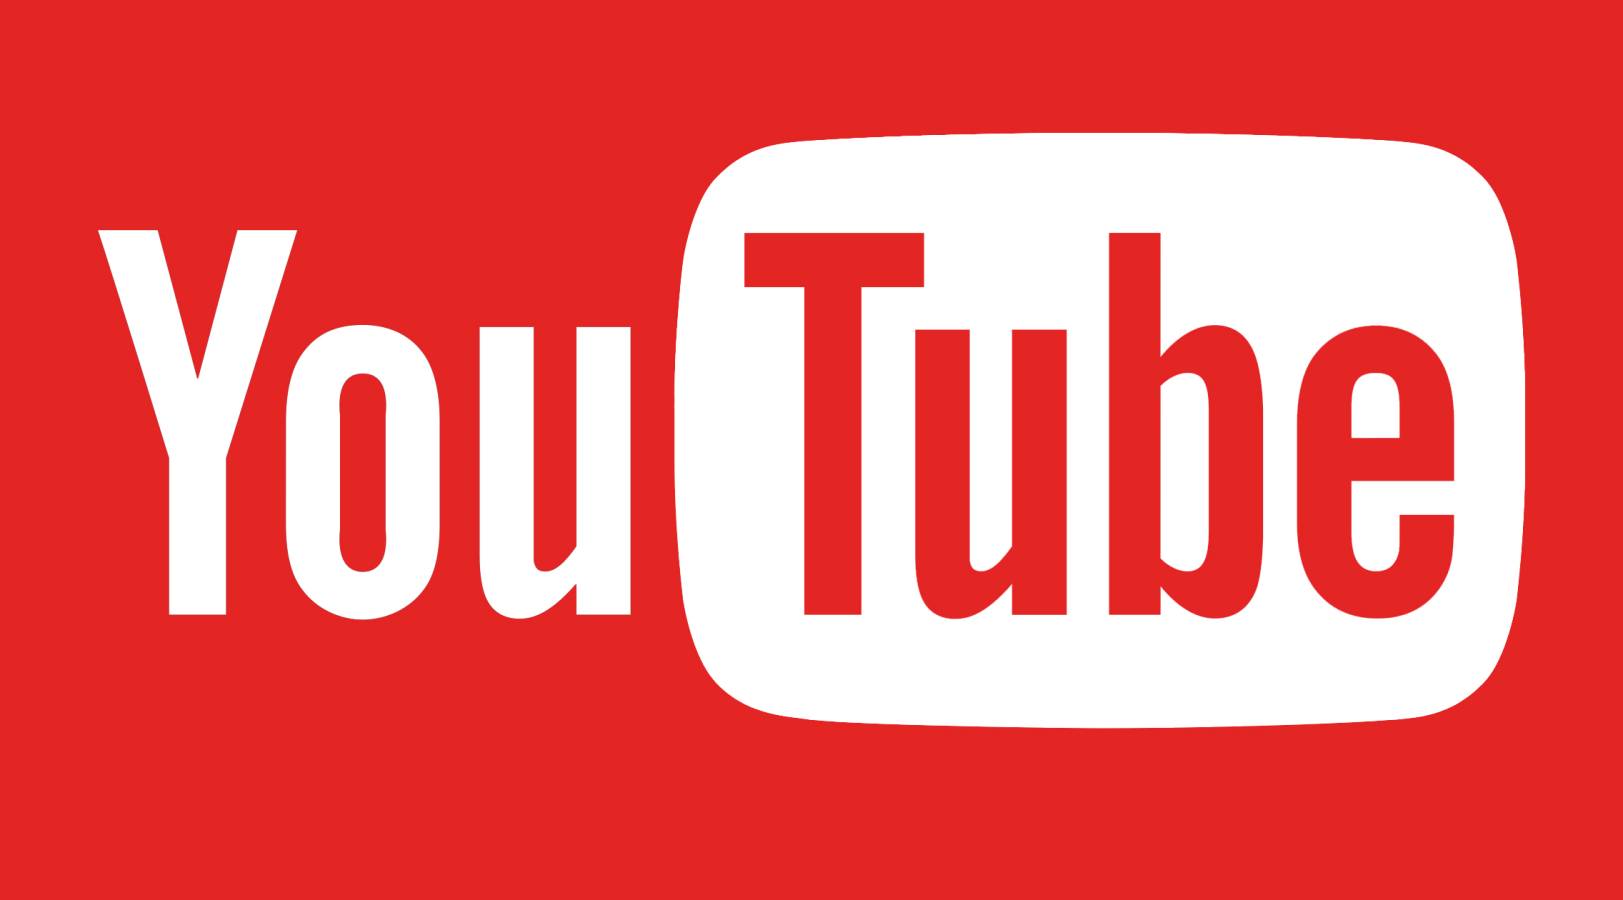 YouTube släppte en ny uppdatering för erbjudanden om applikationsändringar